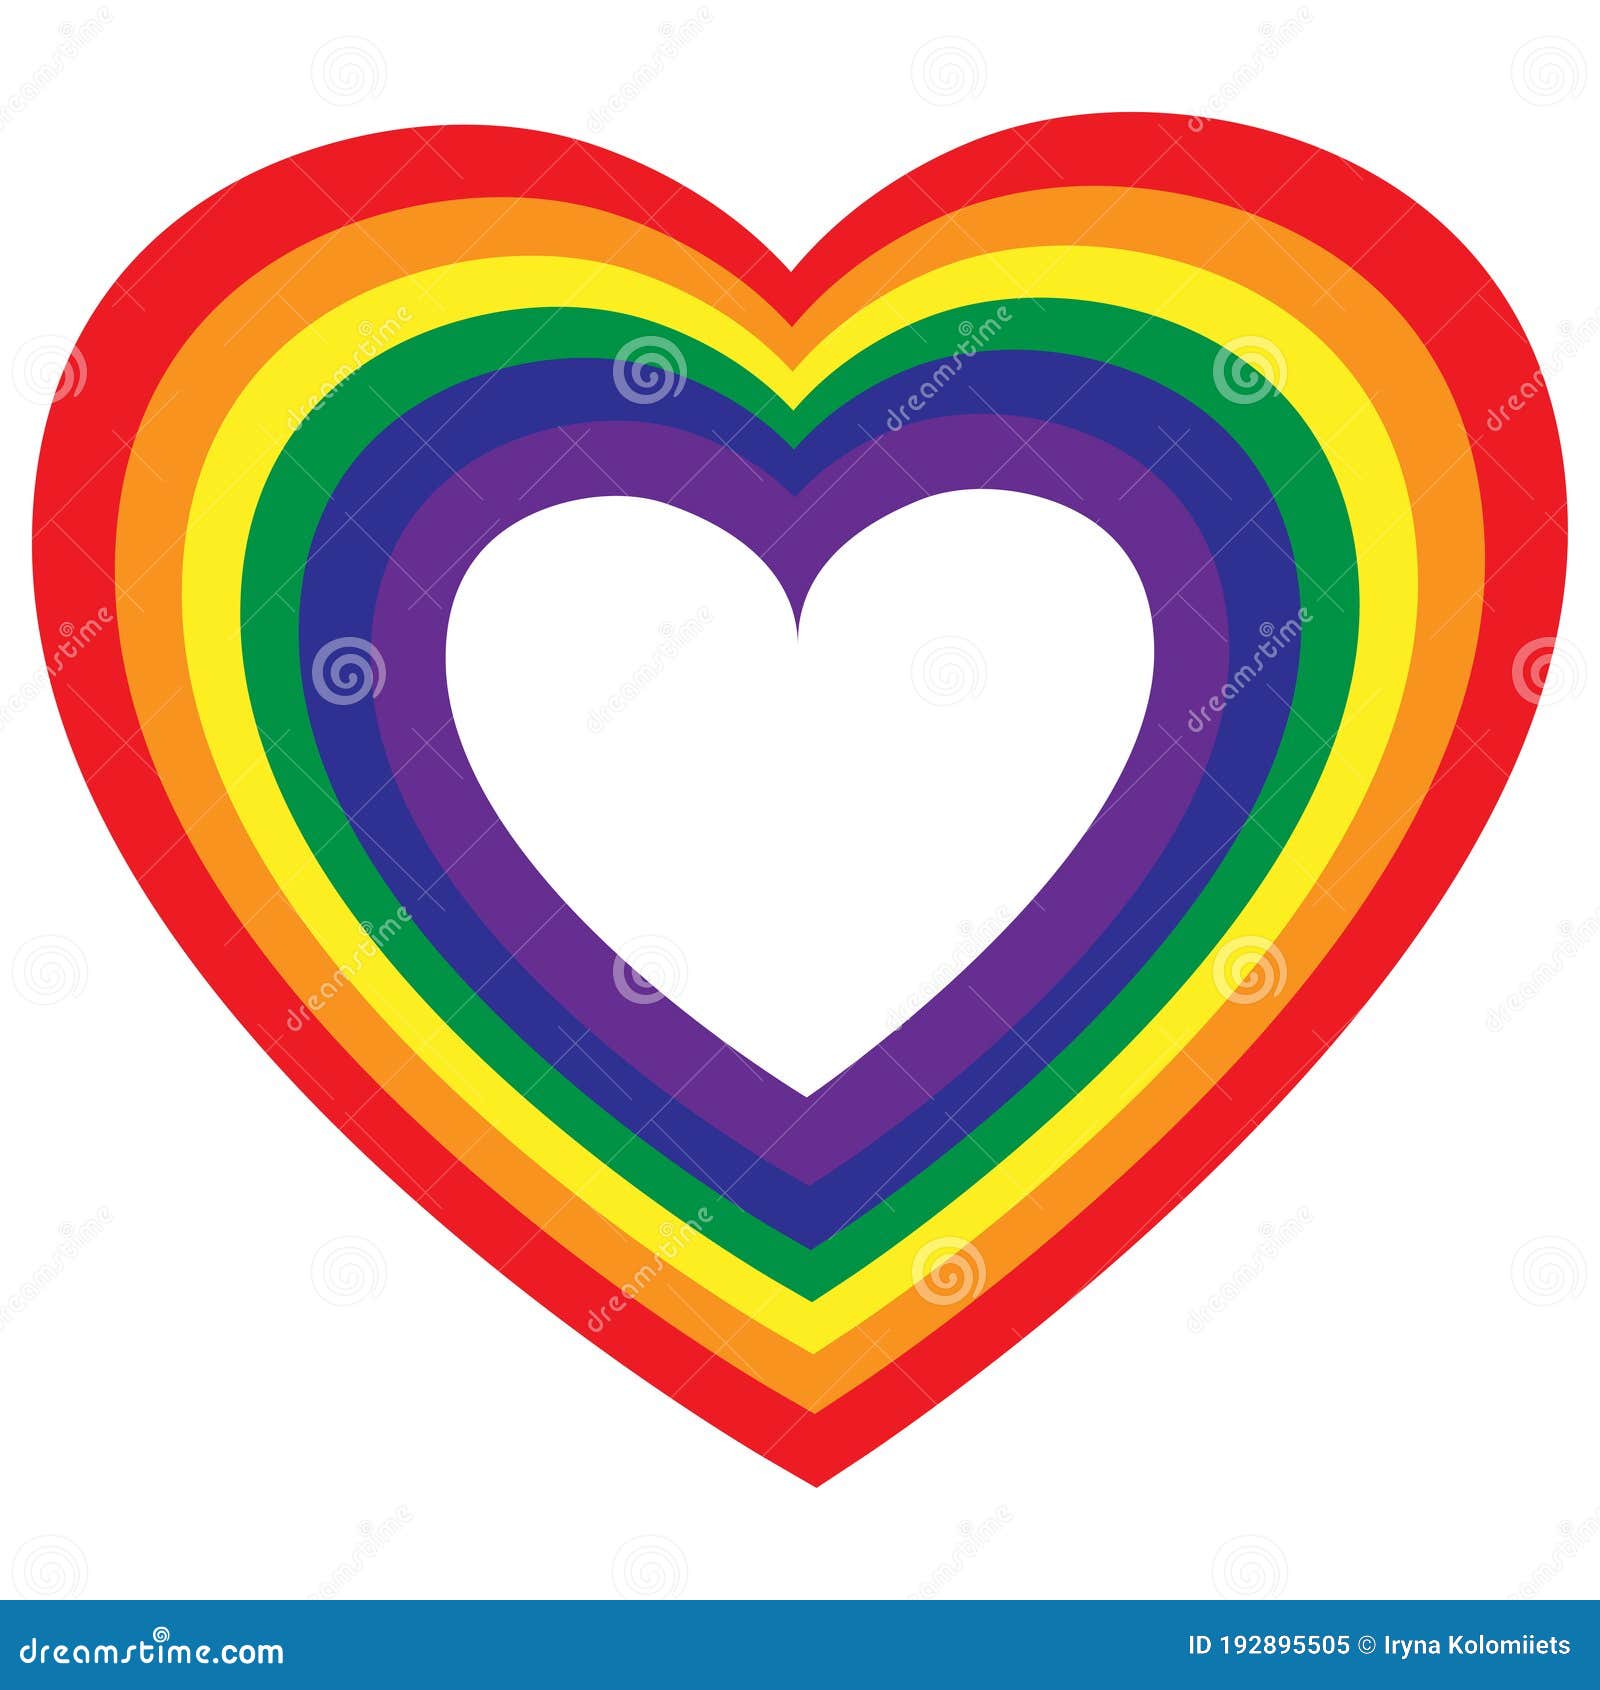 circulos de colores bandera gay y lesbianas Stock Vector